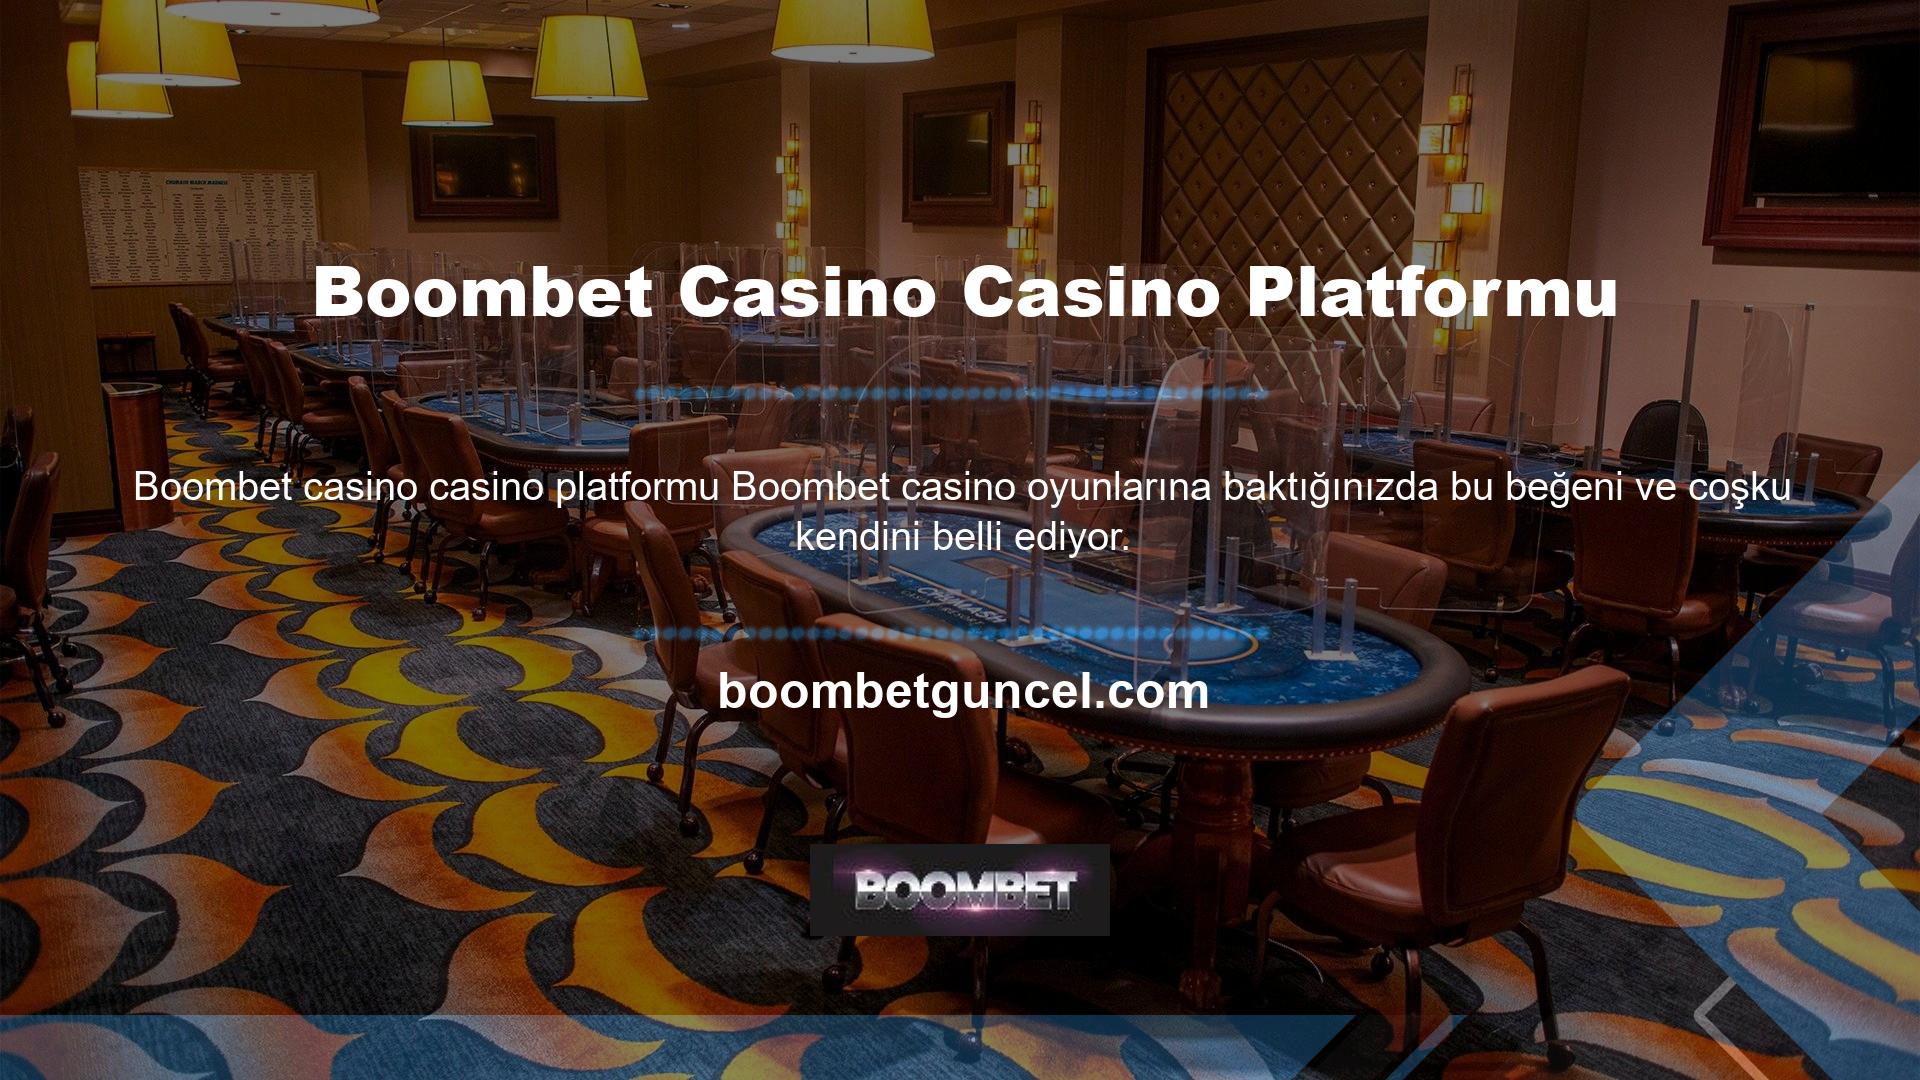 Boombet casino bahis platformu her zaman oyuncular arasında en popüler oyun olmuştur